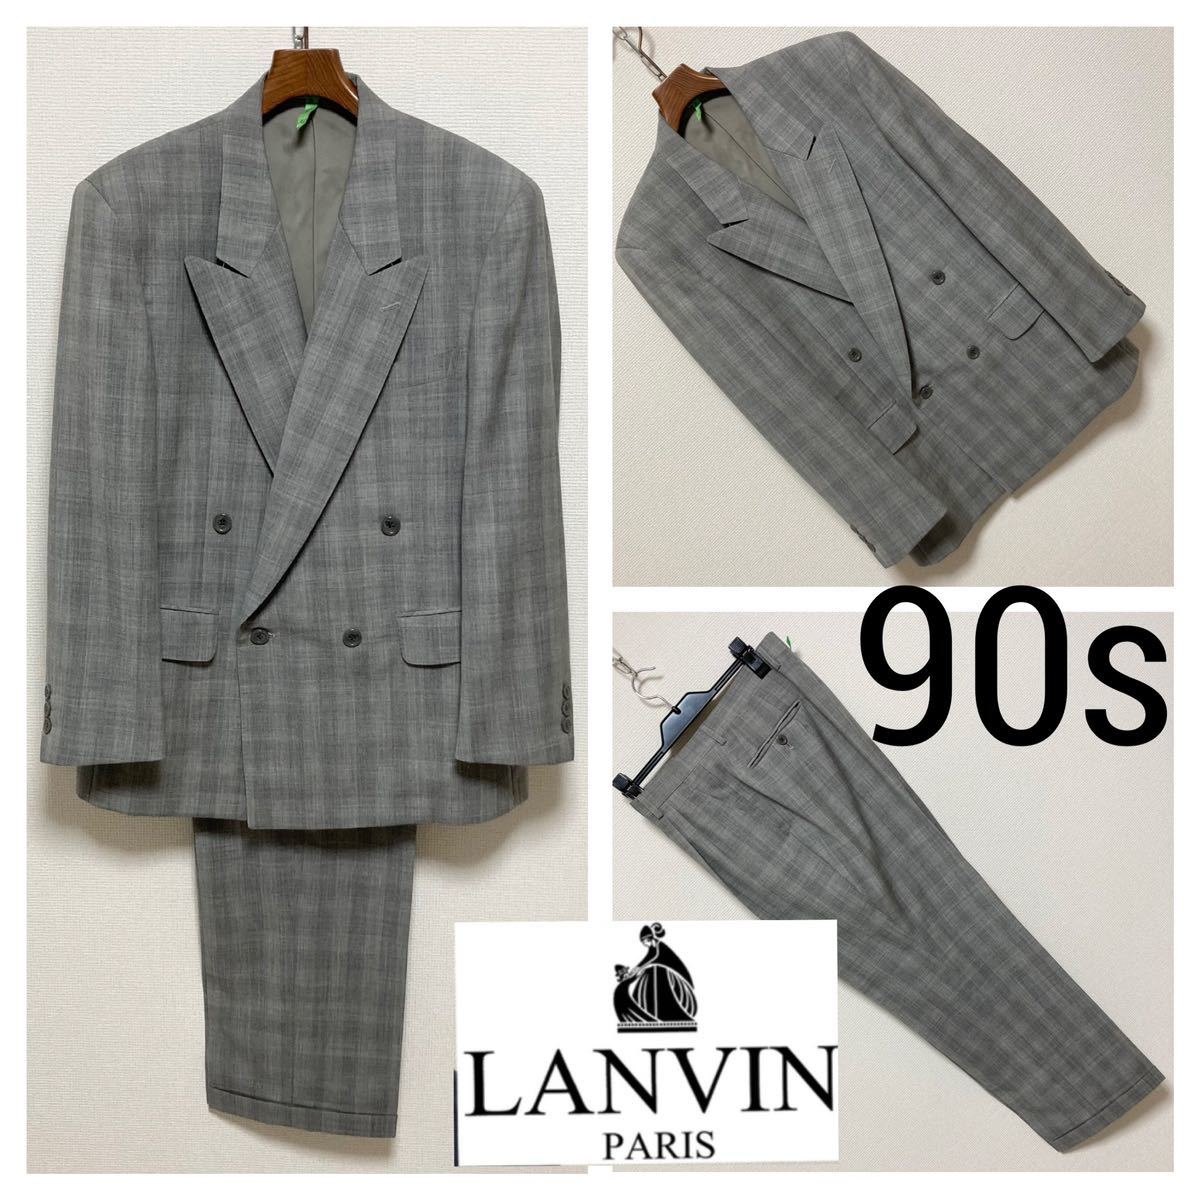 90s Vintage■LANVIN ランバン■ダブル セットアップ スーツ R44 A4 S グレー スーツ シャドーチェック 2タック ワイドパンツ 美品